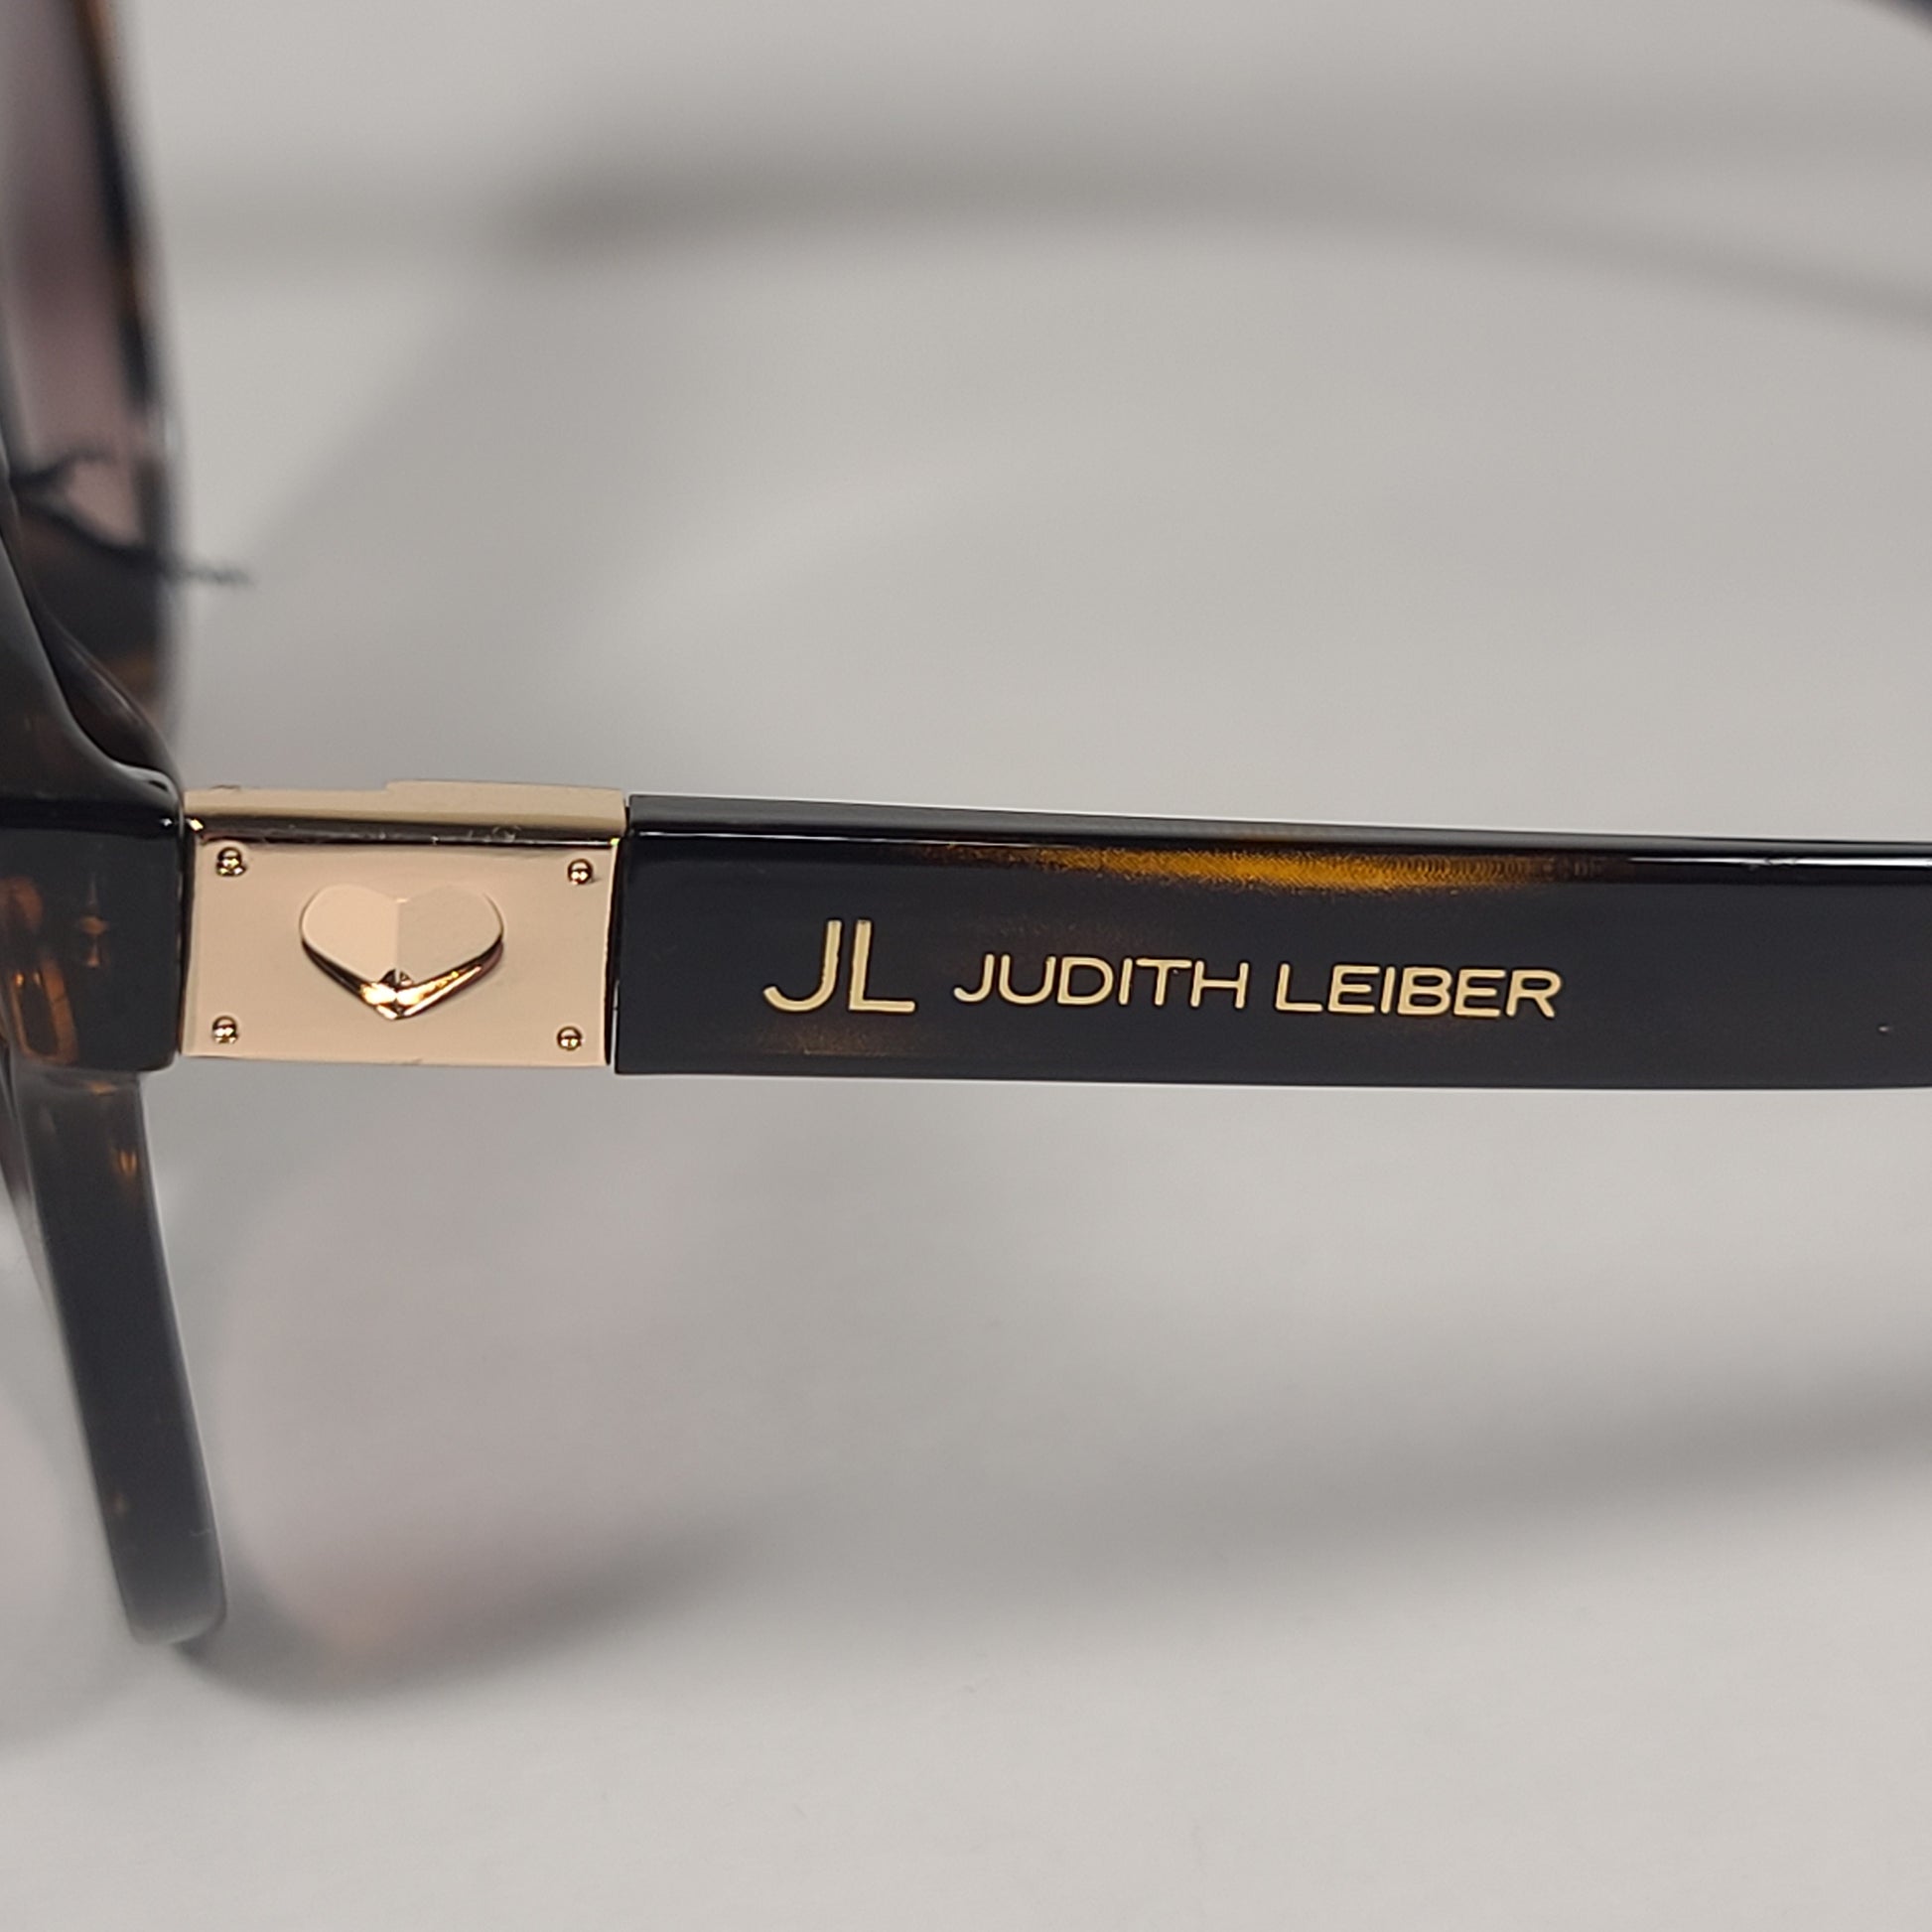 JL By Judith Leiber Slipper Sunglasses Brown Tortoise Gradient Lens - Sunglasses